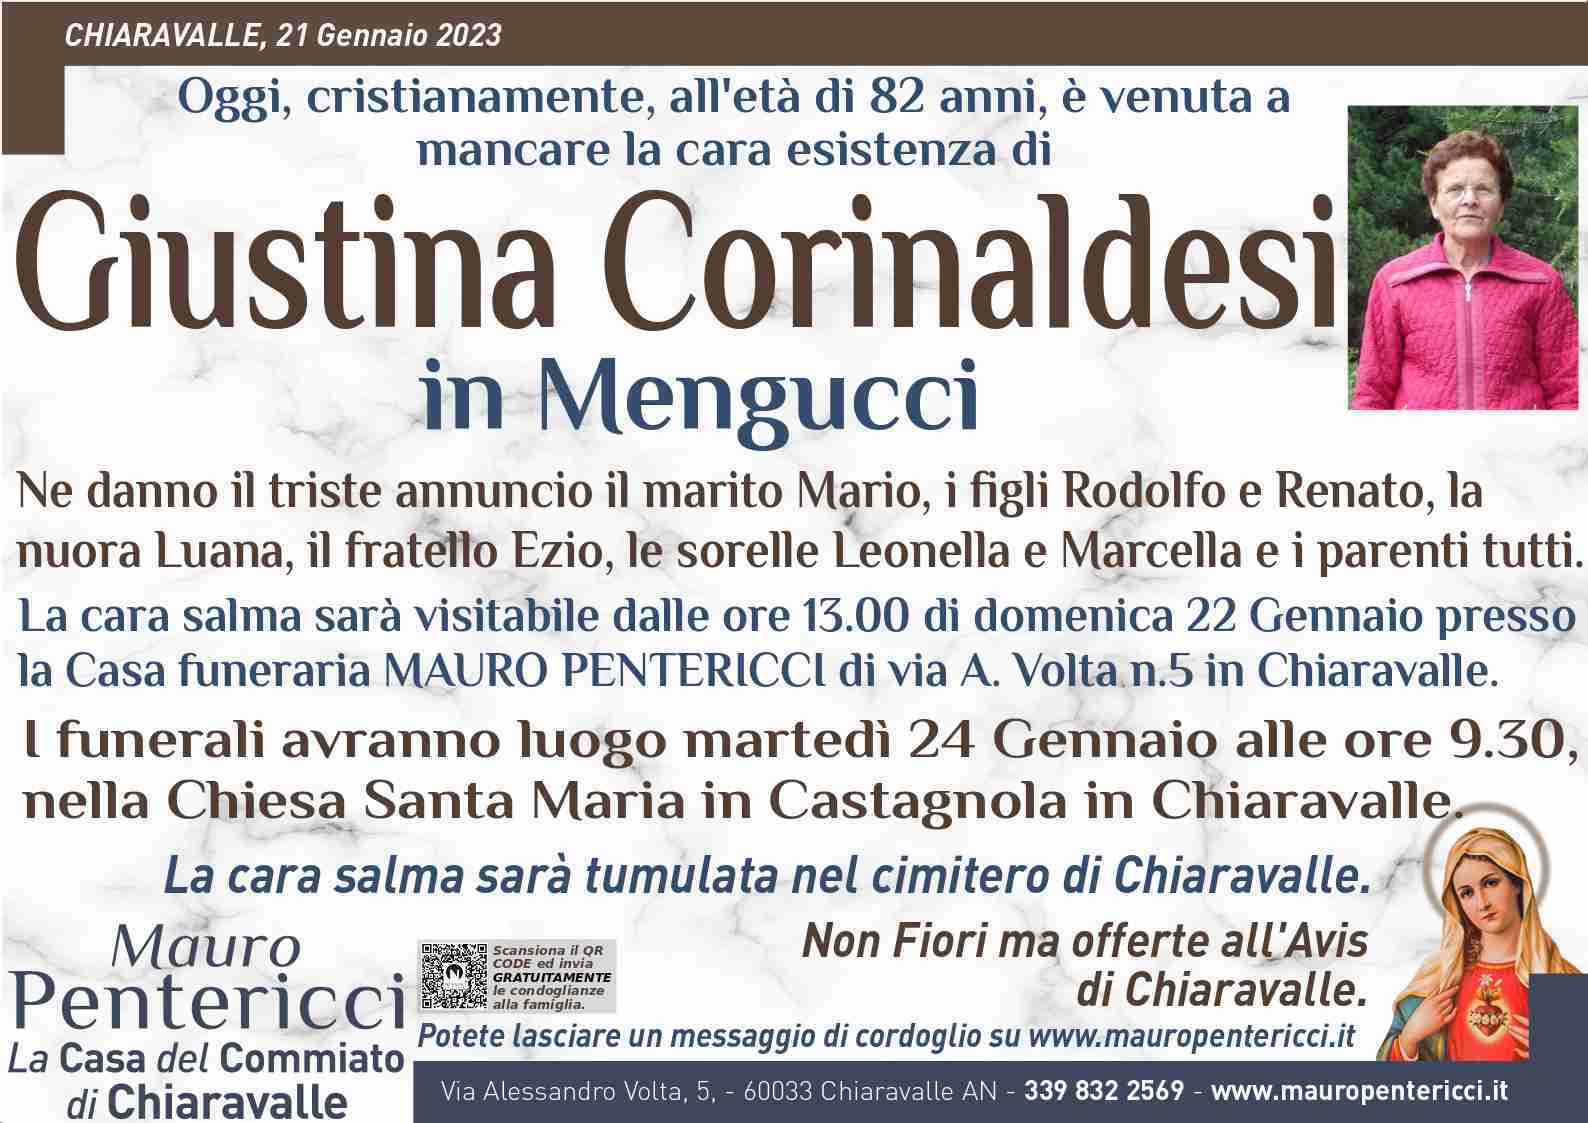 Giustina Corinaldesi